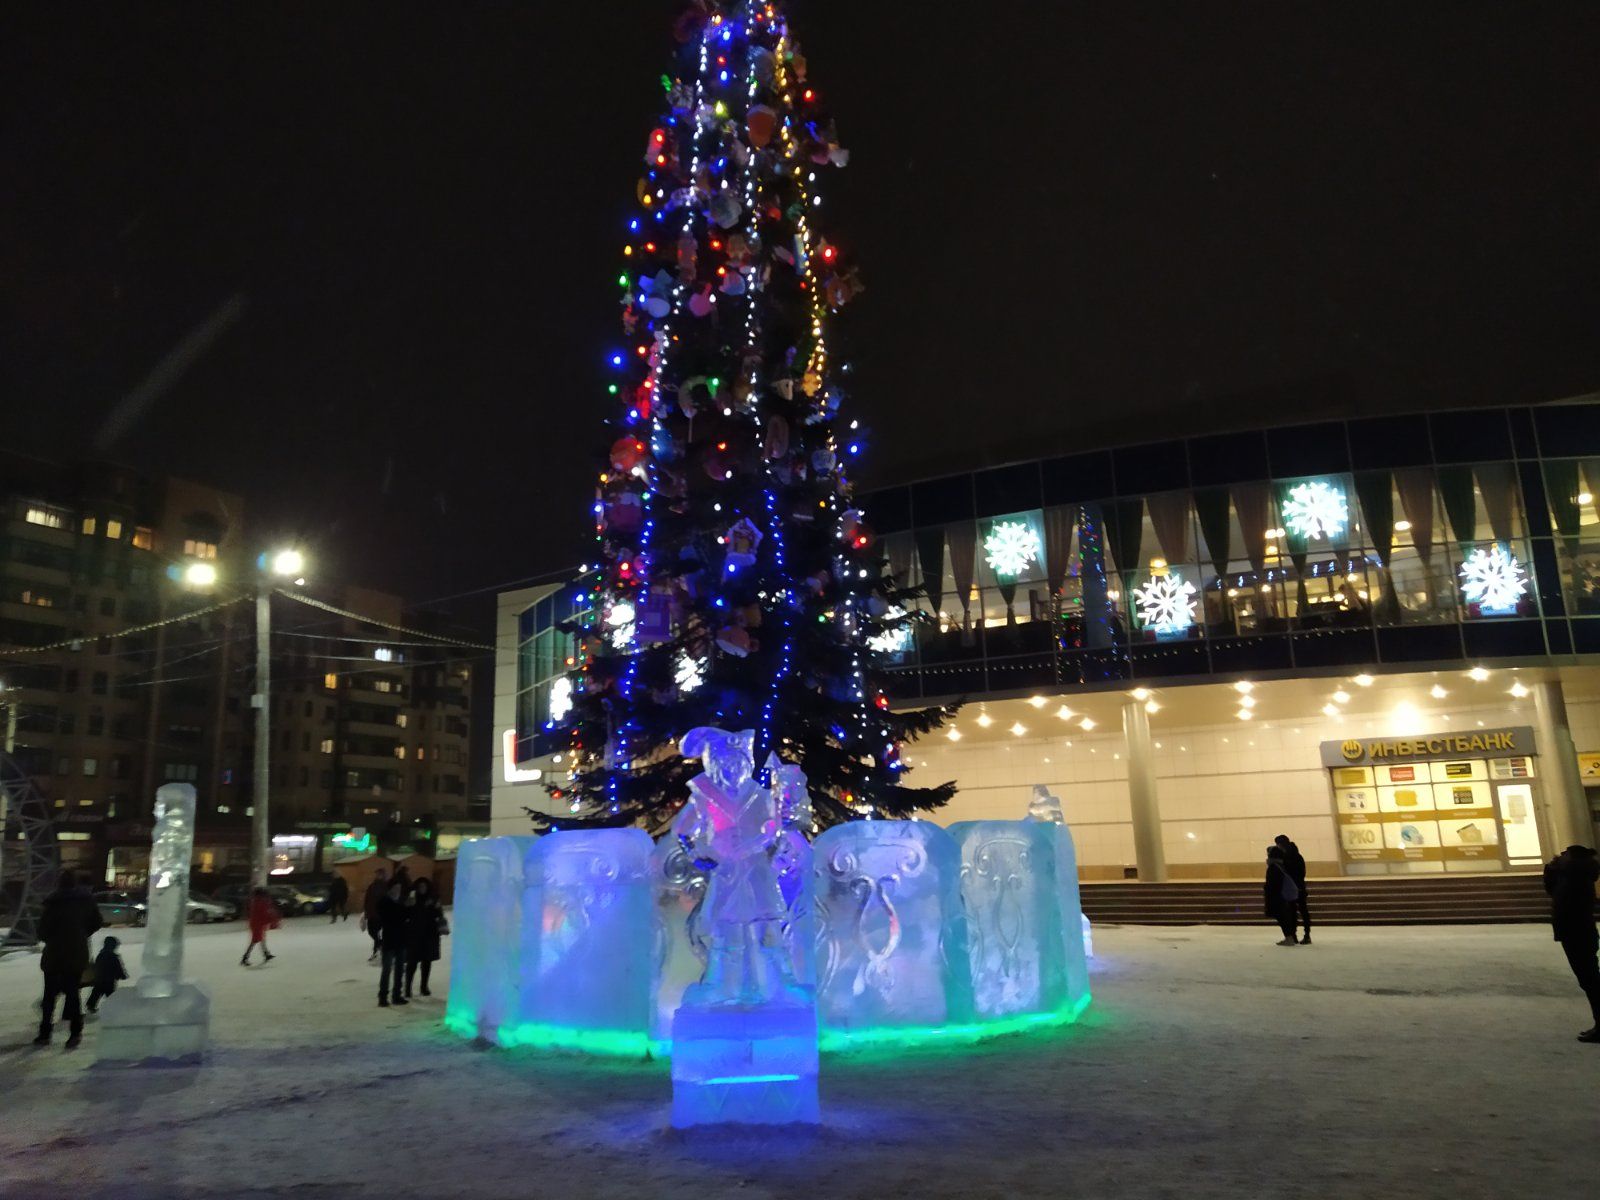 Впервые в Копейске! А вы уже сфотографировали ледовый городок с подсветкой?